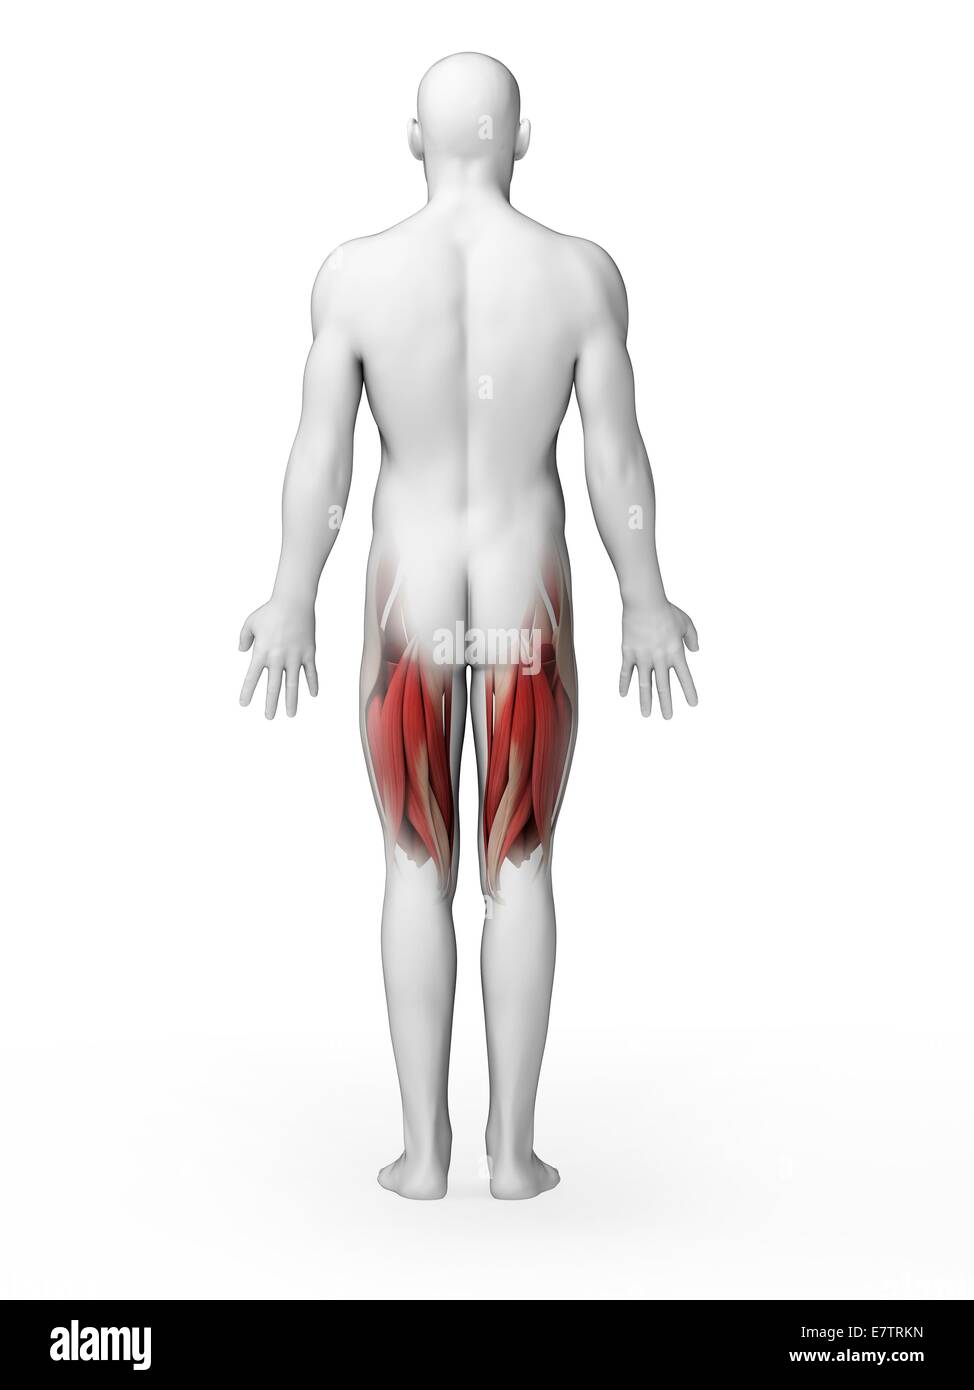 Human upper leg muscles, computer artwork. Stock Photo